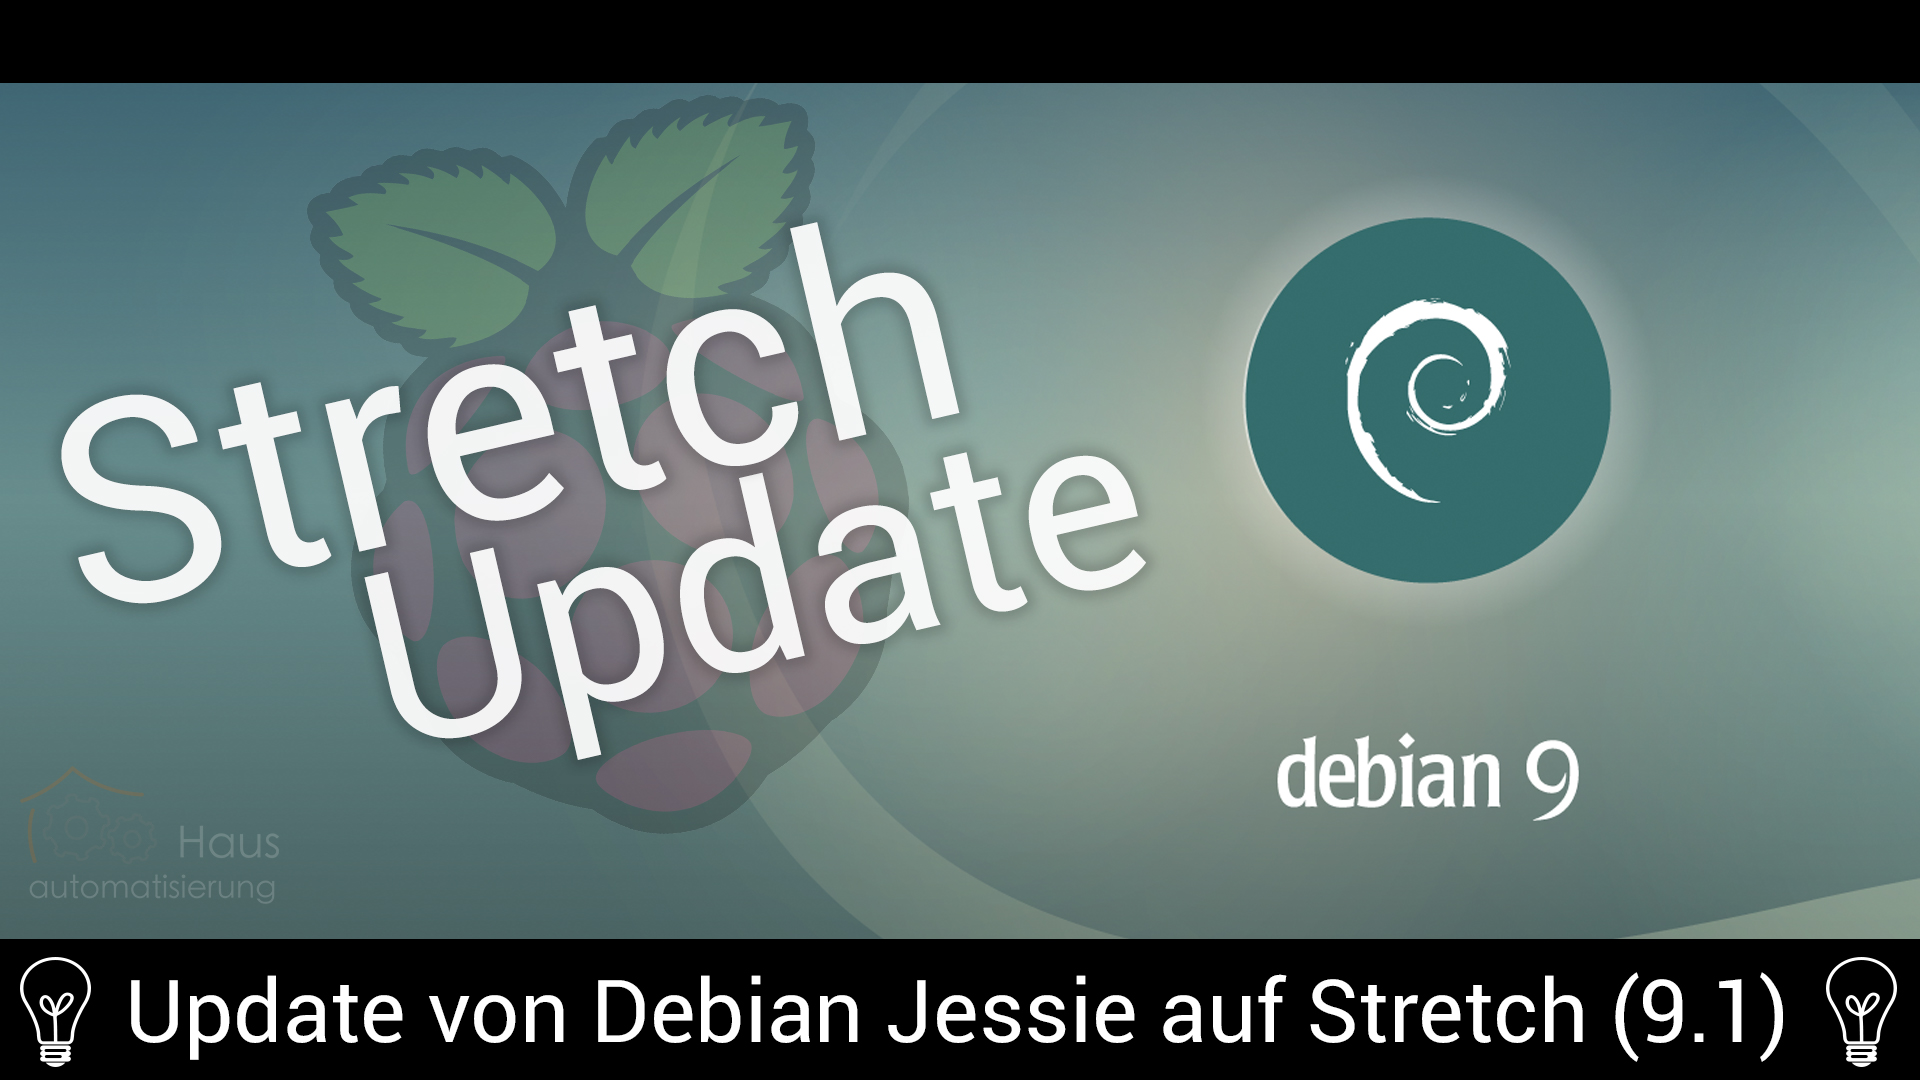 Update des Raspberry Pi von Debian Jessie auf Stretch